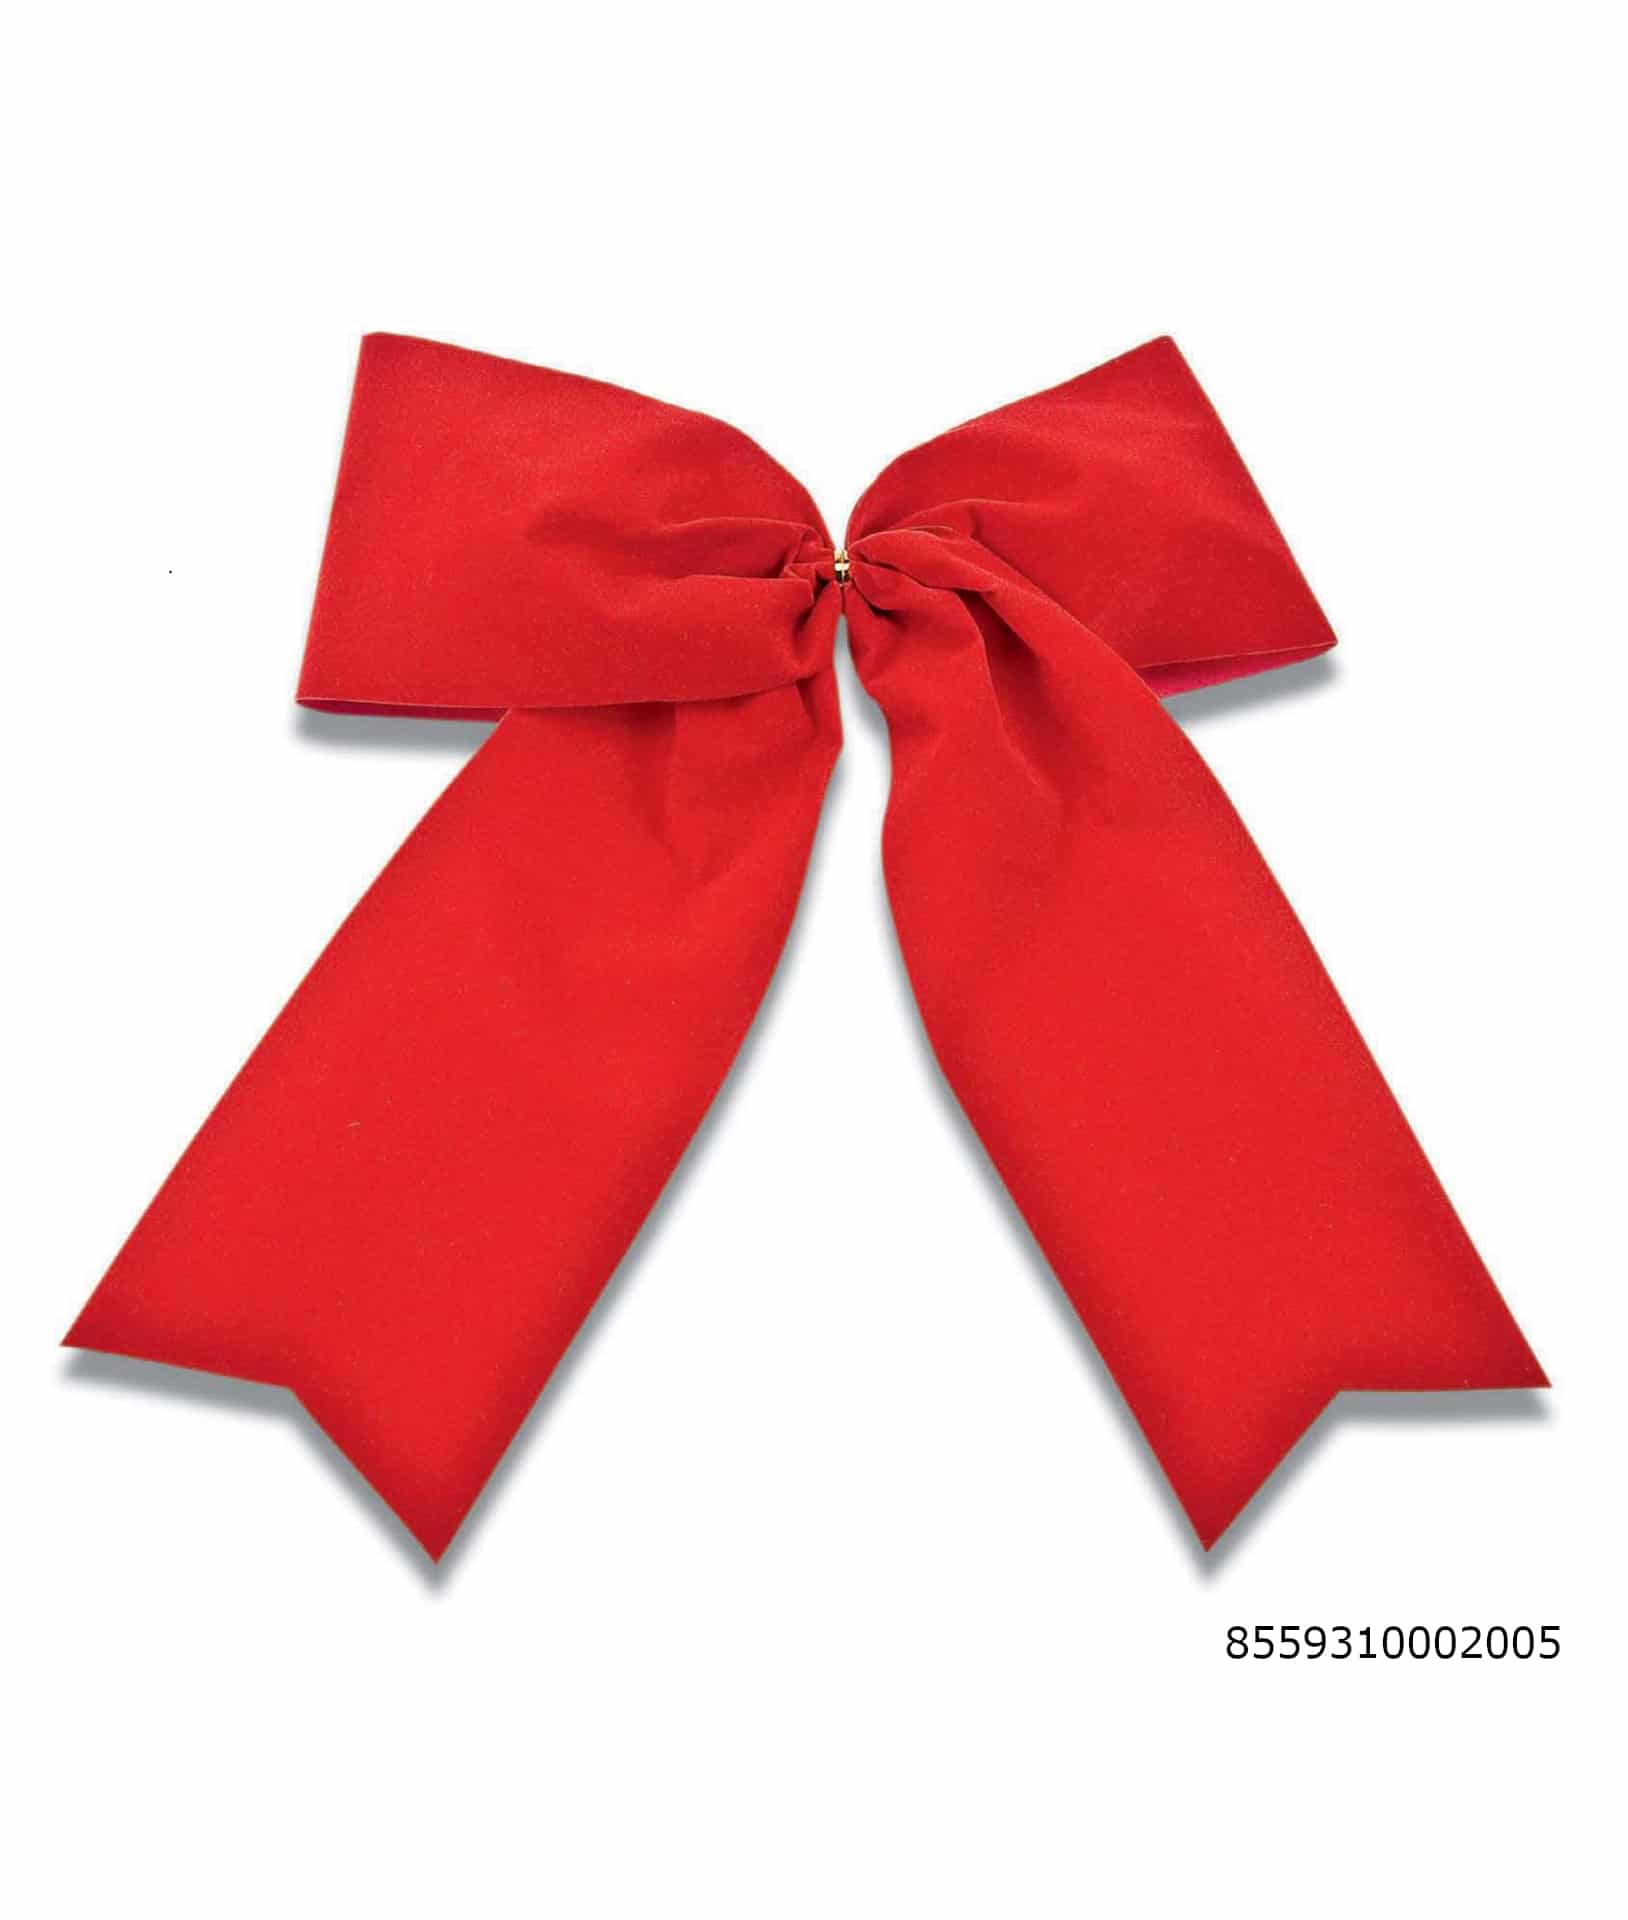 Große Samtschleife rot, Durchmesser ca. 26cm, Outdoor geeignet - outdoor-bander, fertigschleifen, weihnachtsband-2, geschenkverpackung, weihnachtsbaender